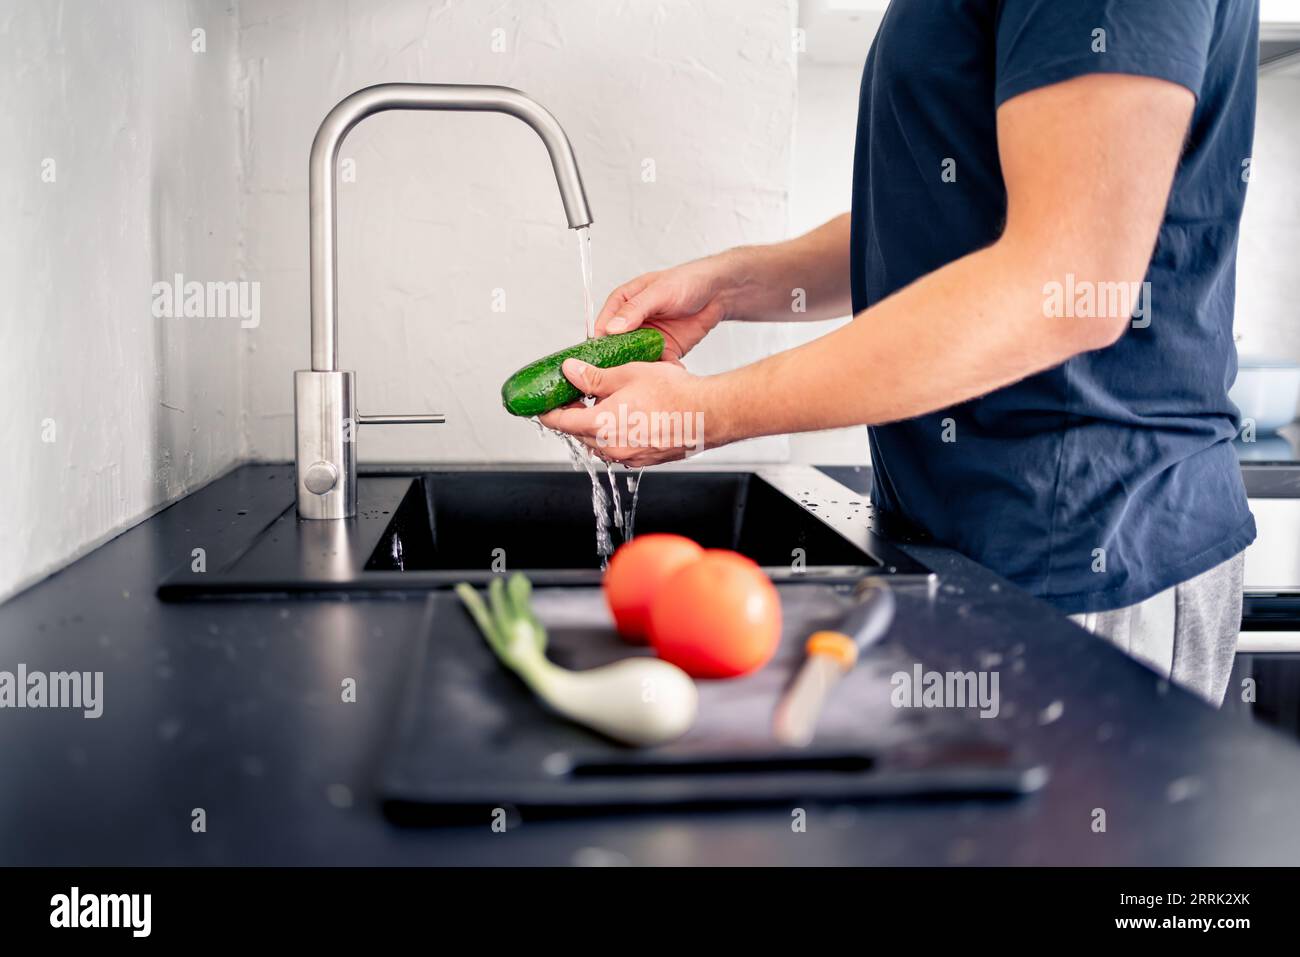 Gemüse im Spülbecken mit Wasser waschen. Lebensmittelzubereitung. Mann kocht. Salatzubereitung. Gurke in der Hand unter Wasserhahn. Vegan oder vegetarisch. Stockfoto